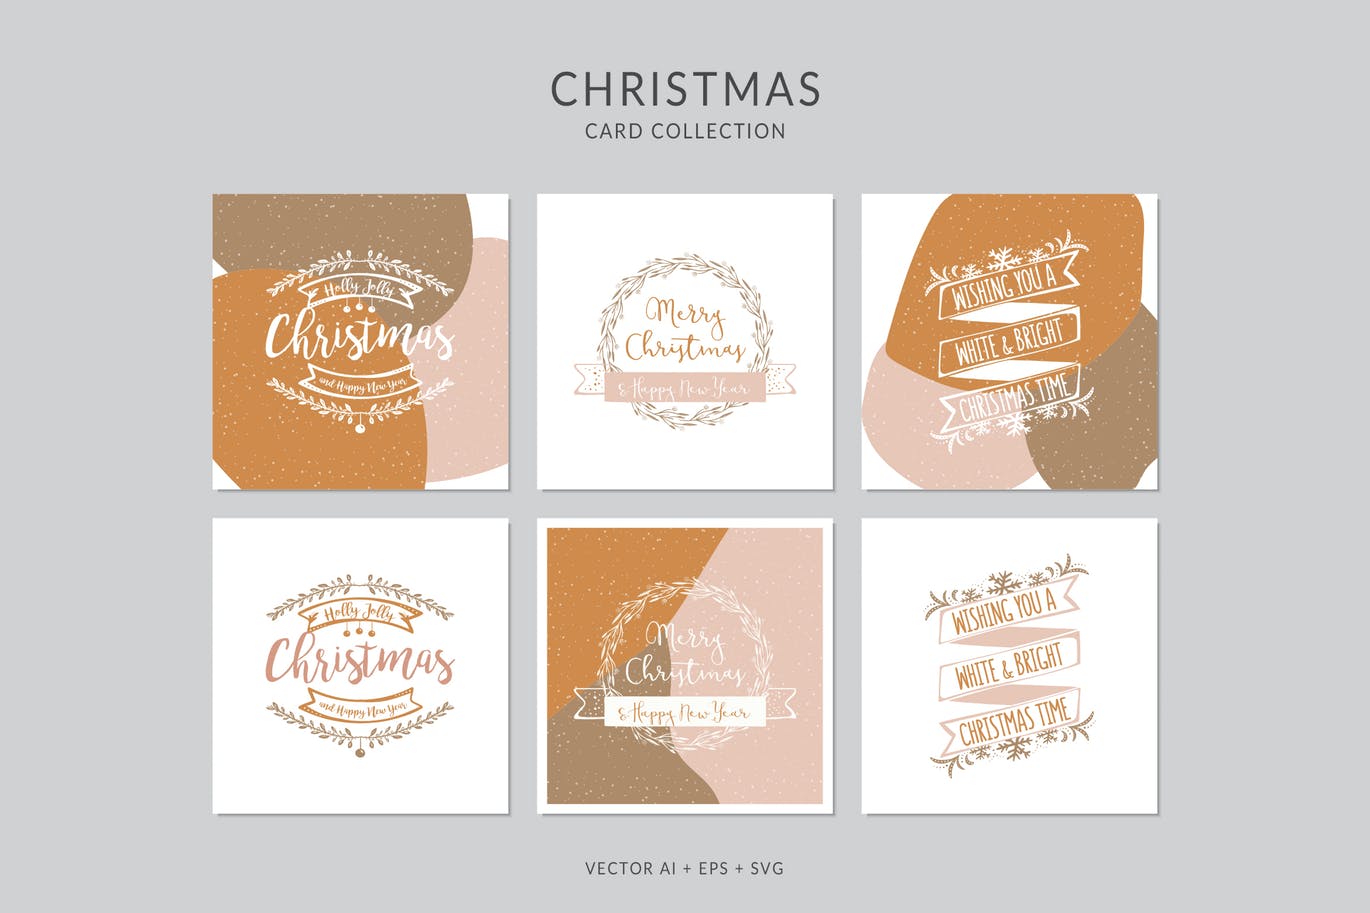 创意三色设计风格诞节贺卡矢量设计模板集v3 Christmas Greeting Card Vector Set插图